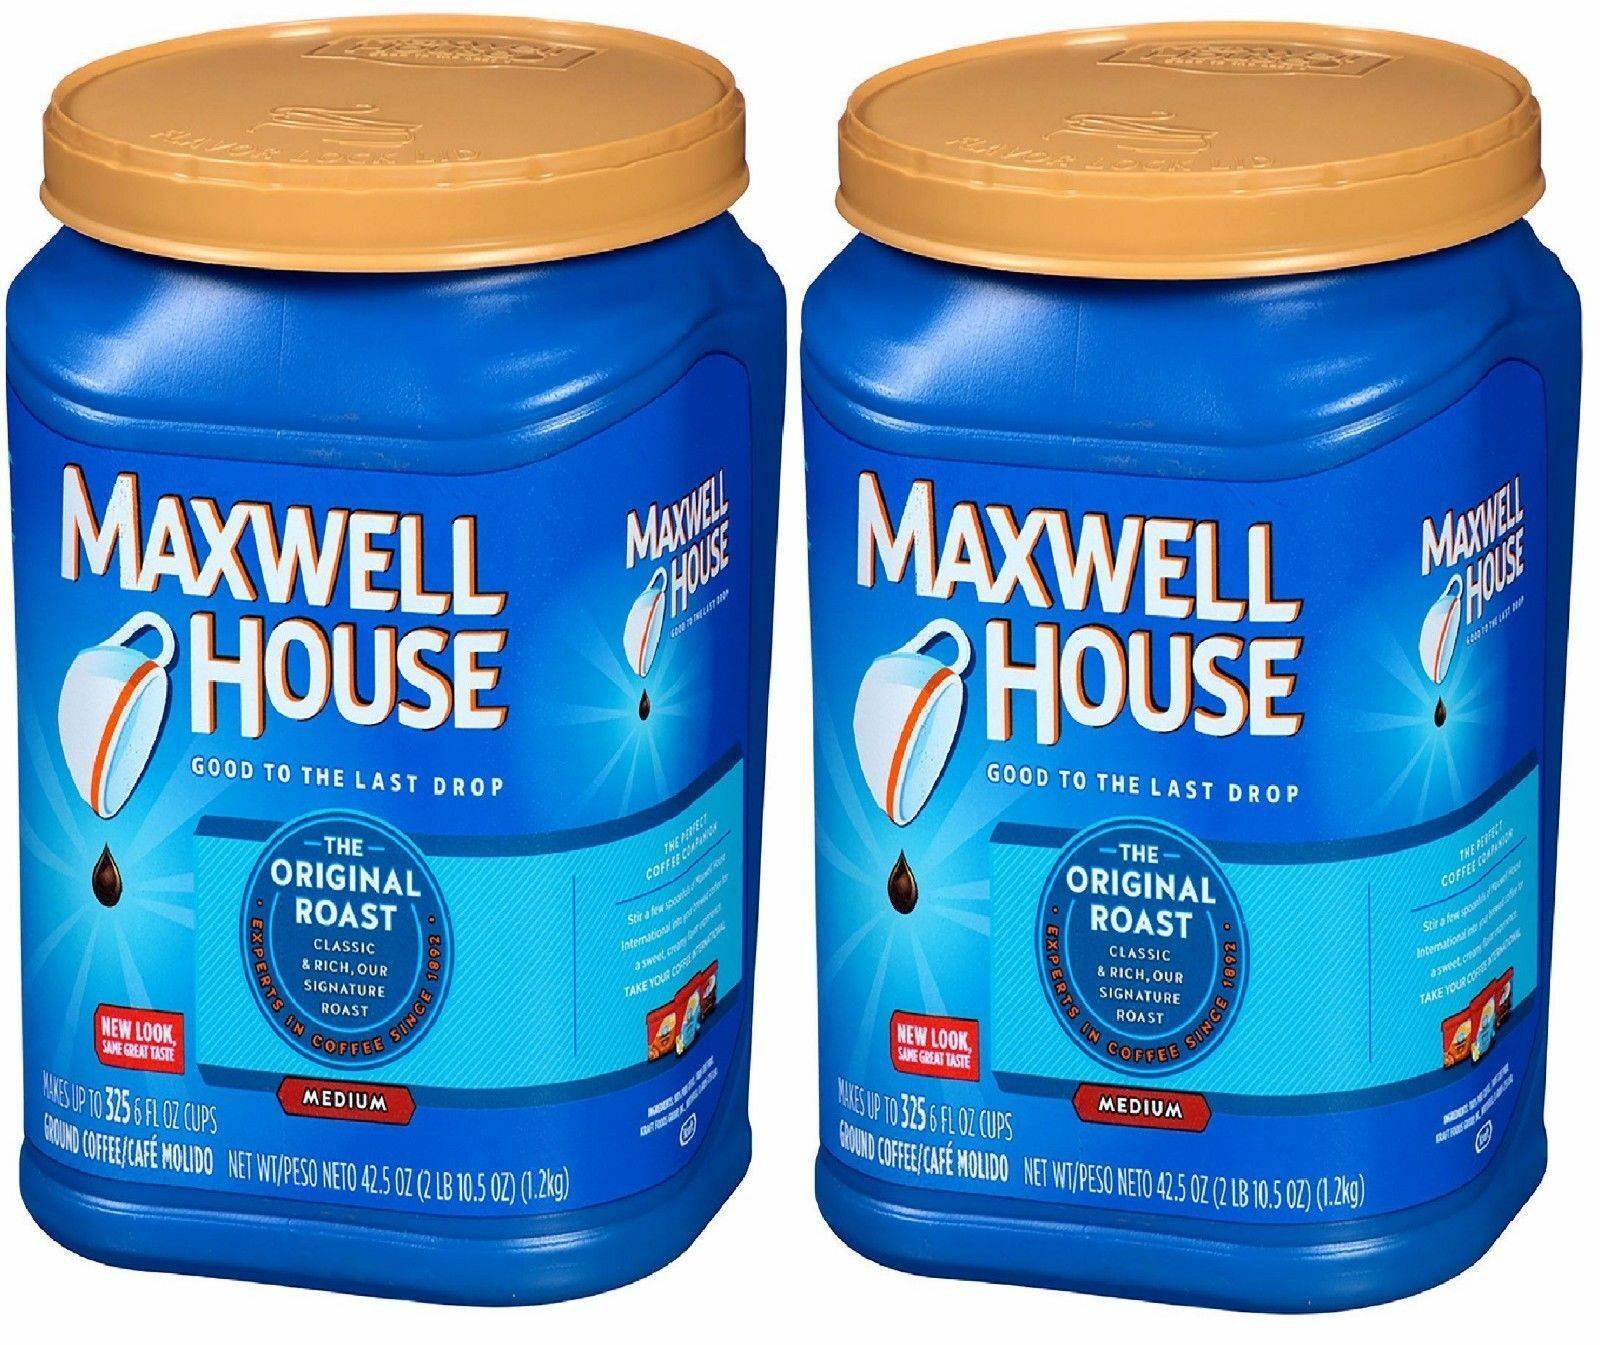 Кофе максвелл хаус (maxwell house): описание и виды марки